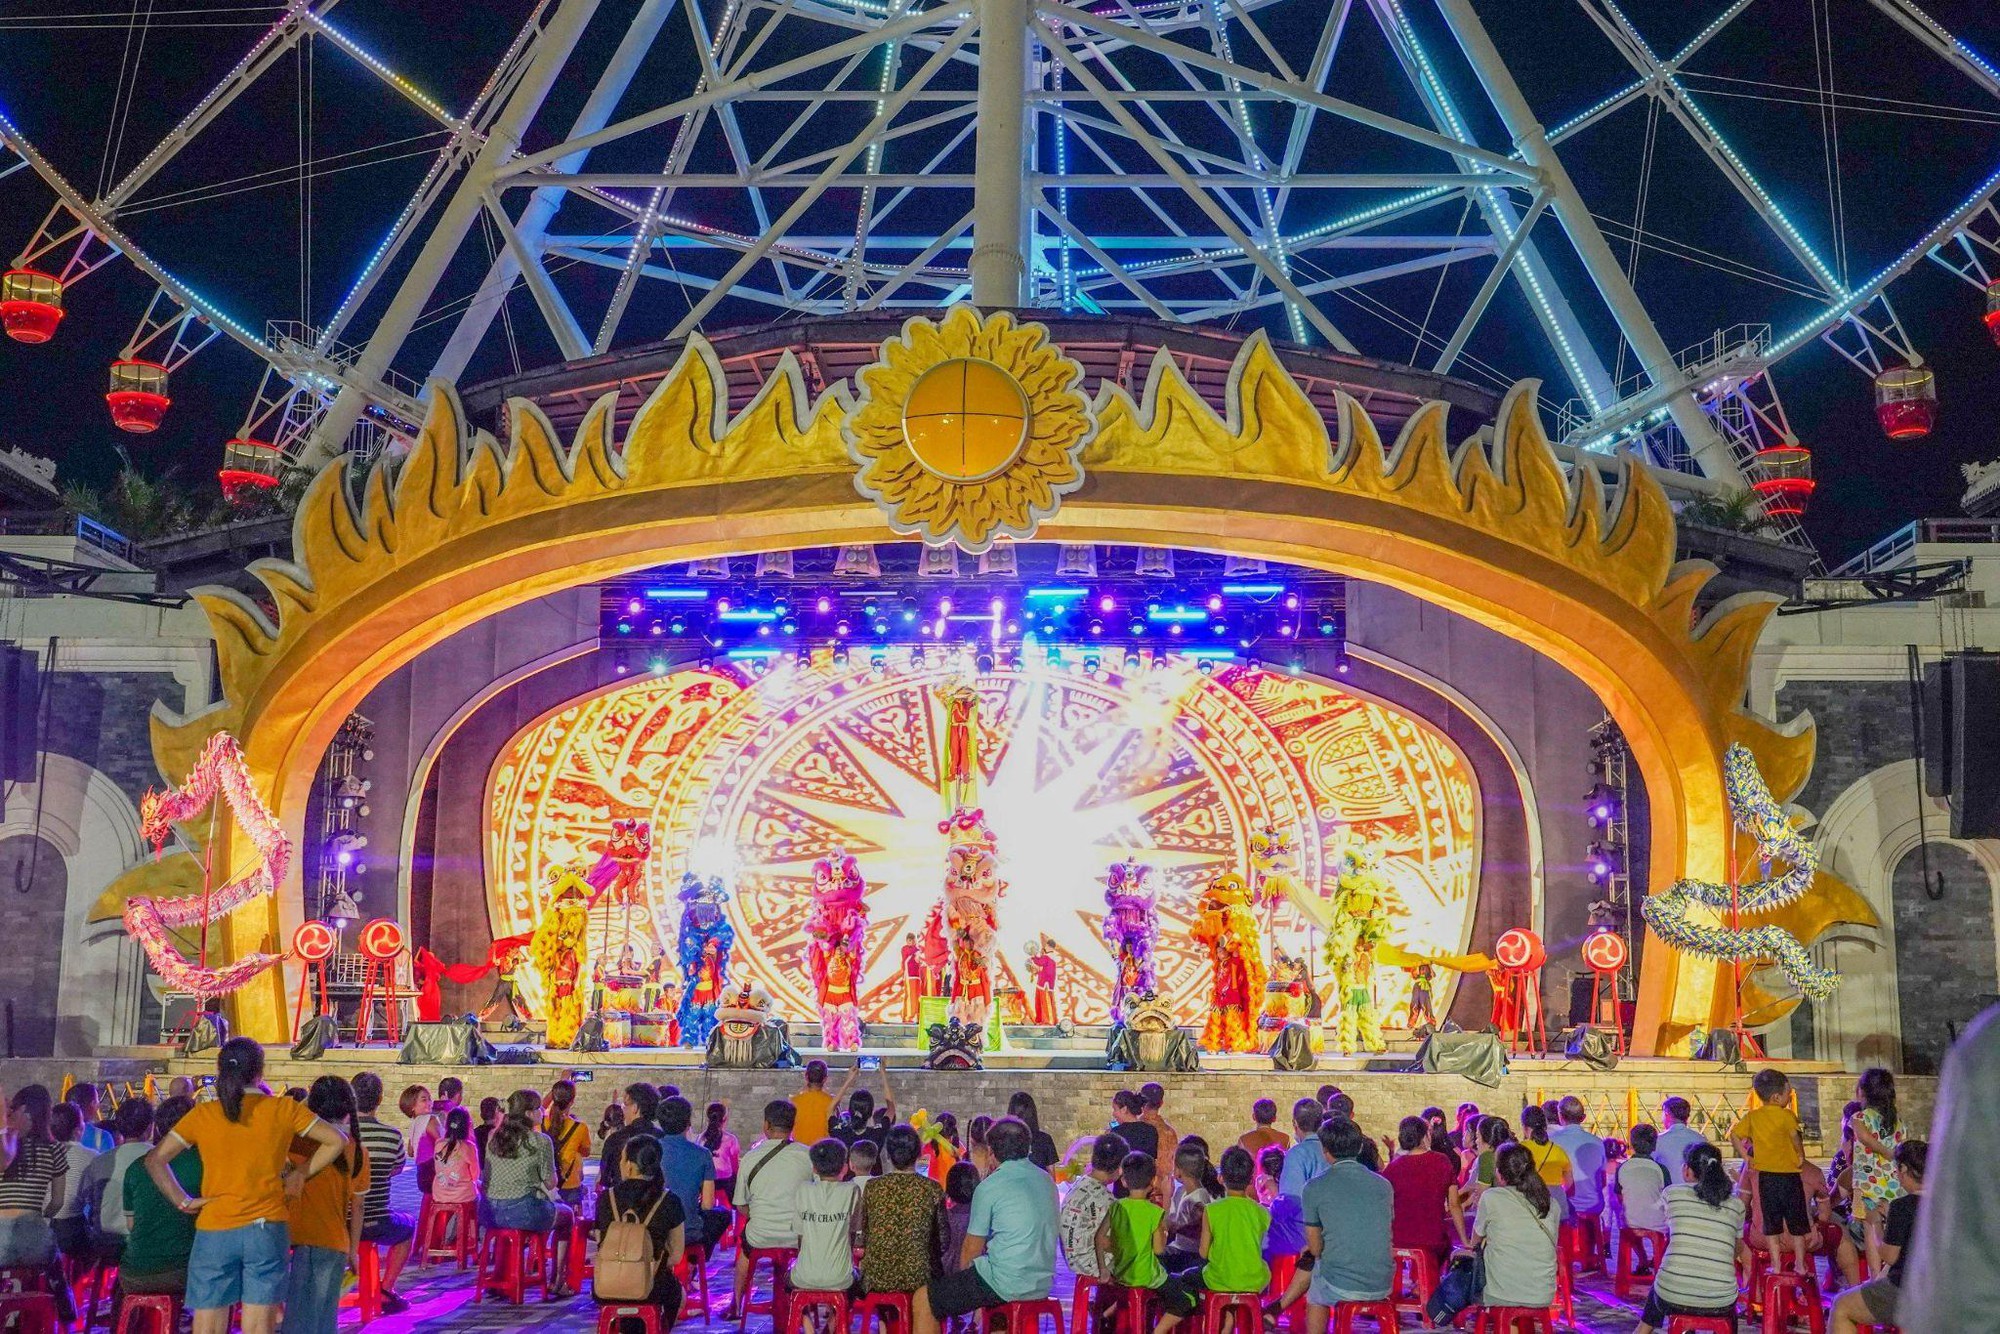 Dịp lễ 30/4, đến Đà Nẵng xem múa rối và chơi hội chợ Mặt trời - Ảnh 5.